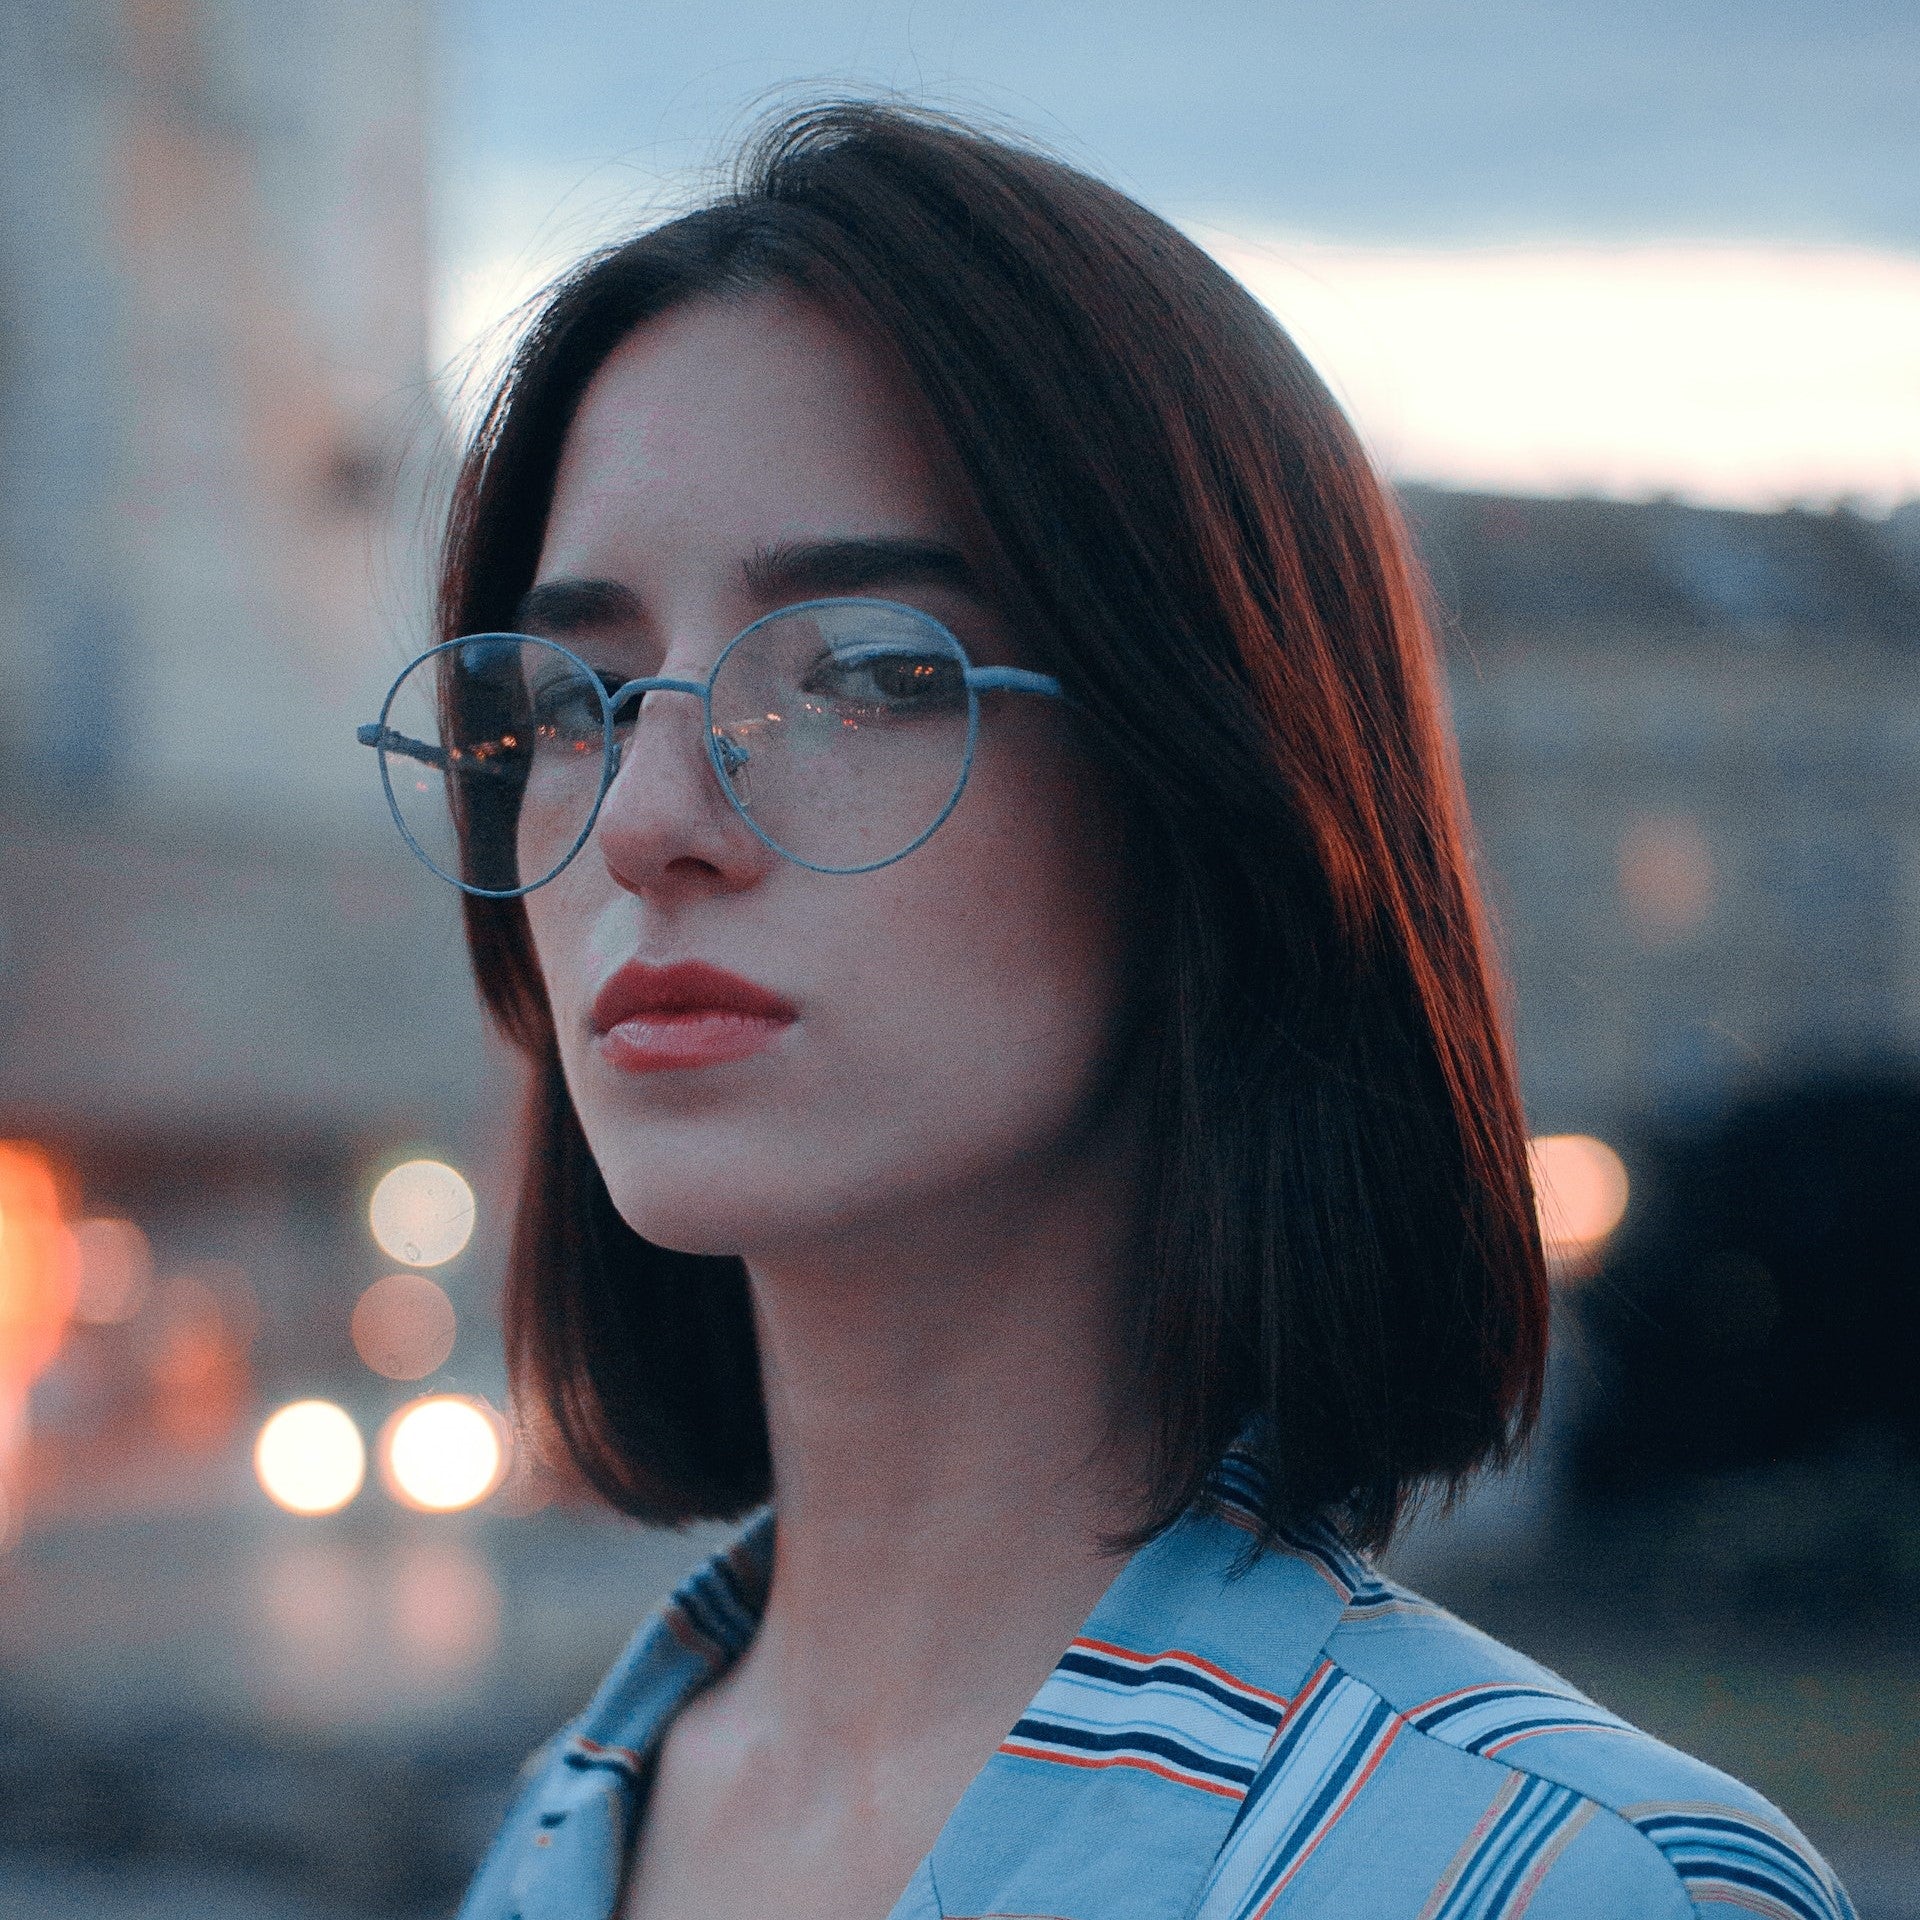 Girl Wearing Glasses